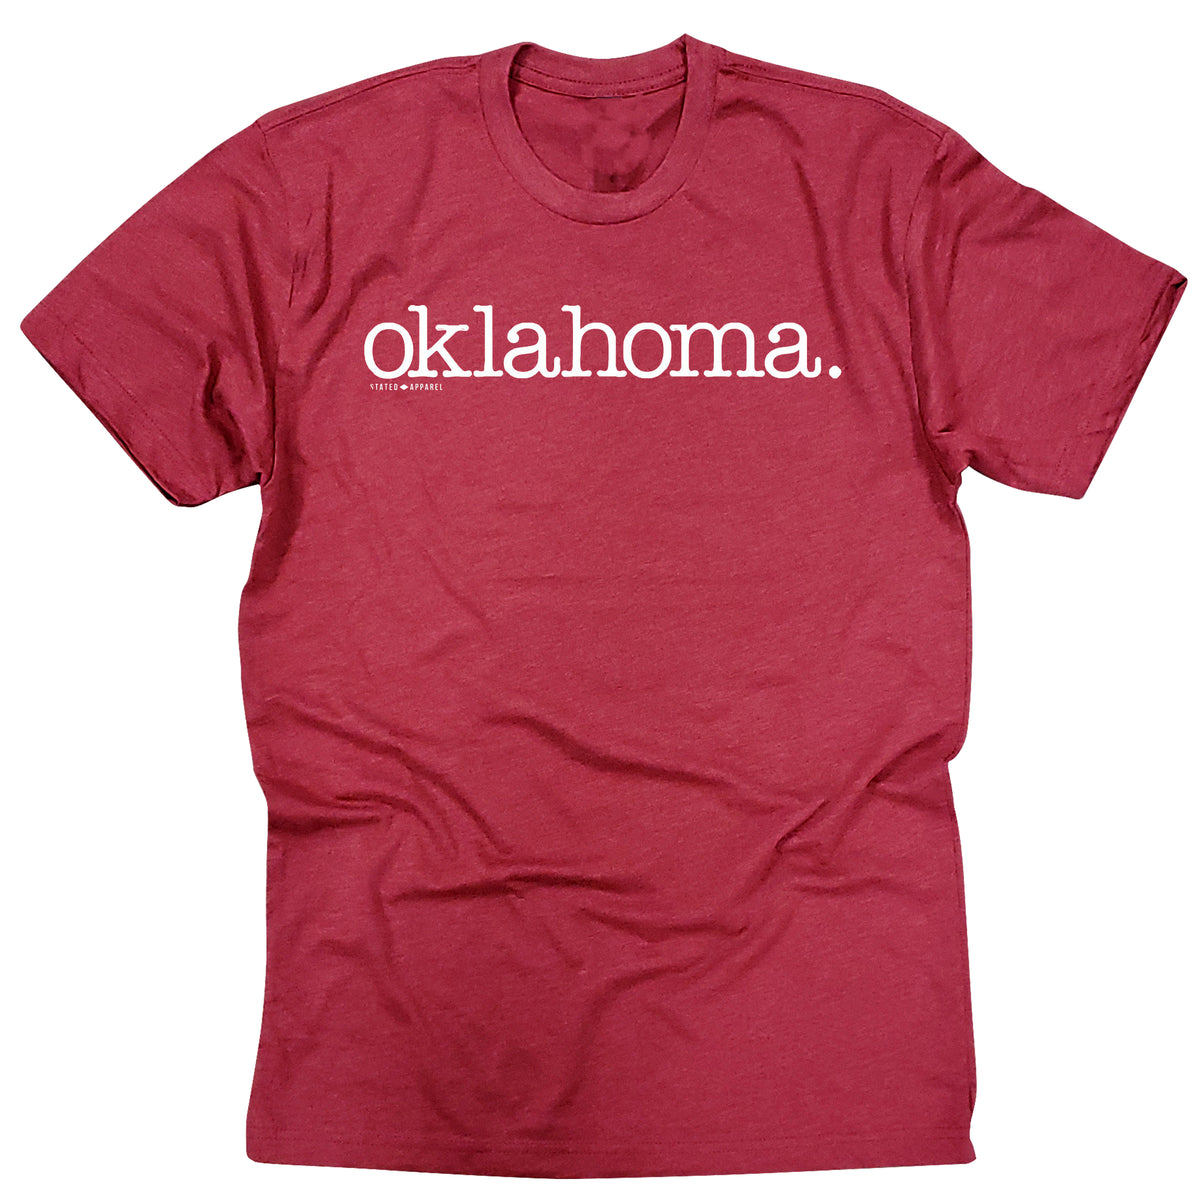 Oklahoma. T-Shirt